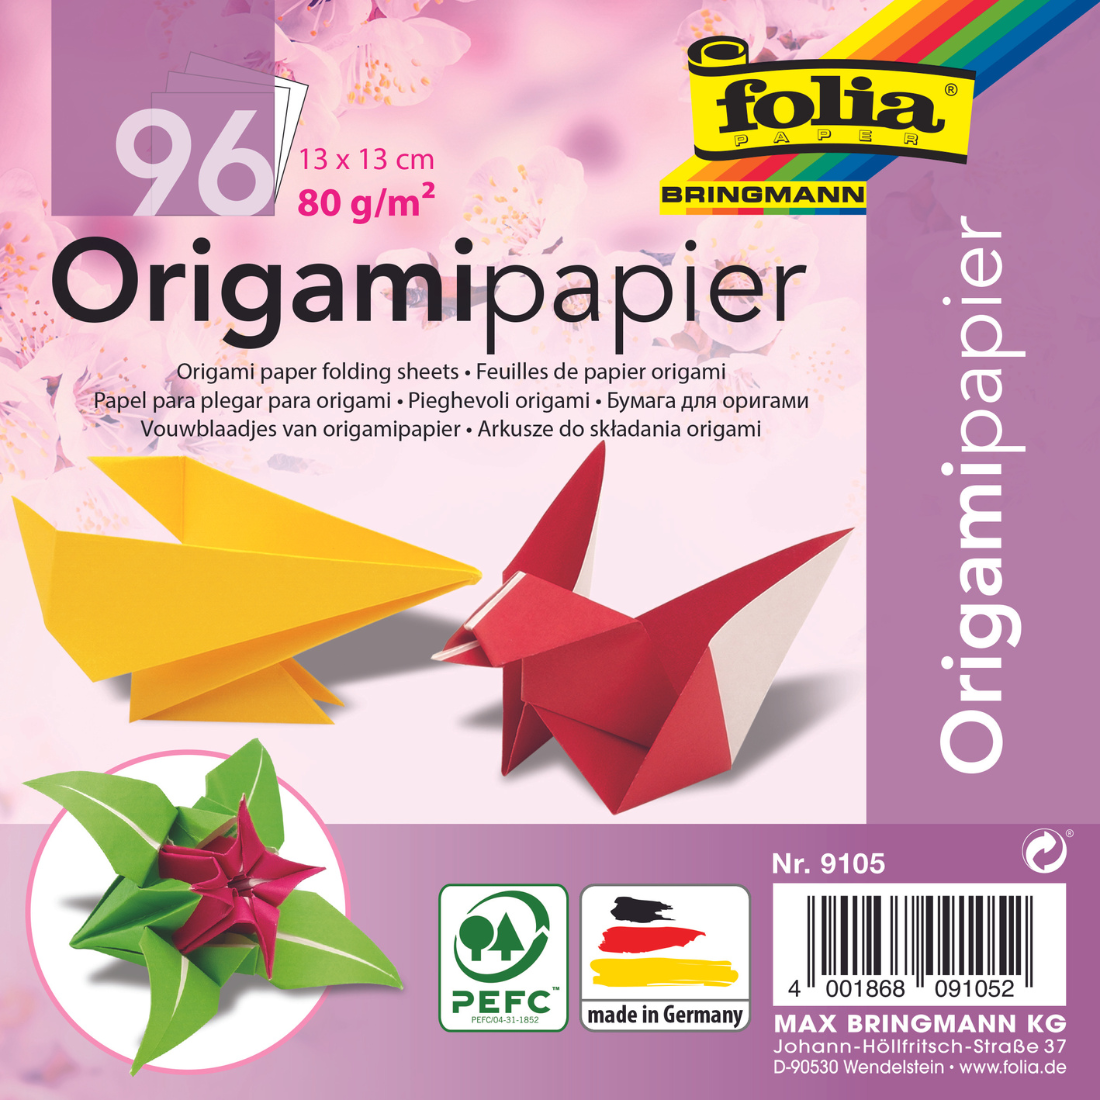 Papel Origami de Dobragem da Folia.